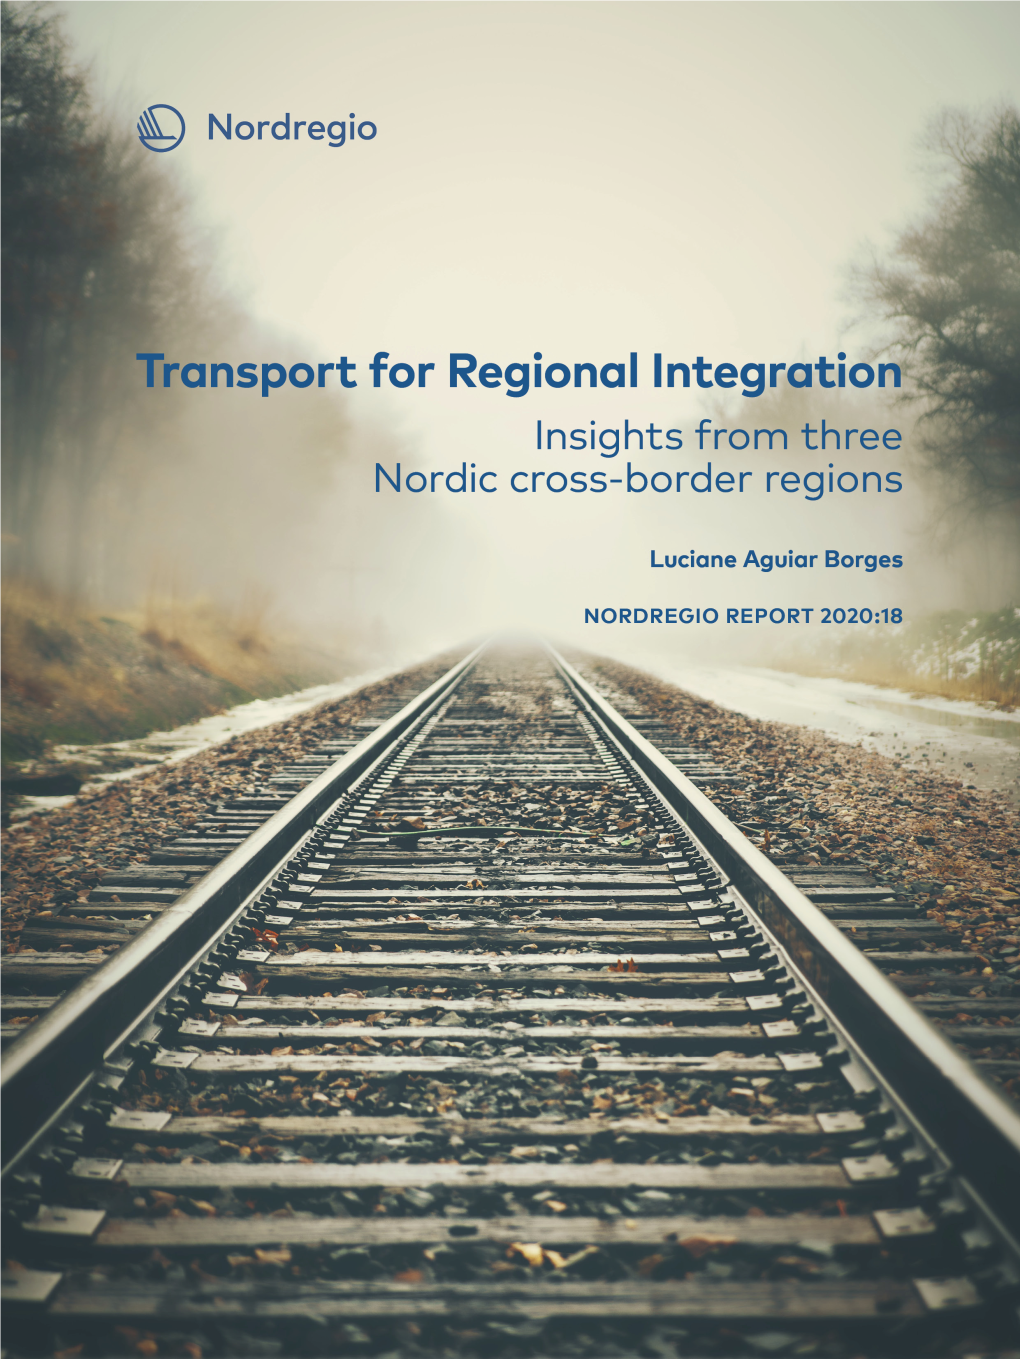 2. Transportation in Three Nordic Cross-Border Regions